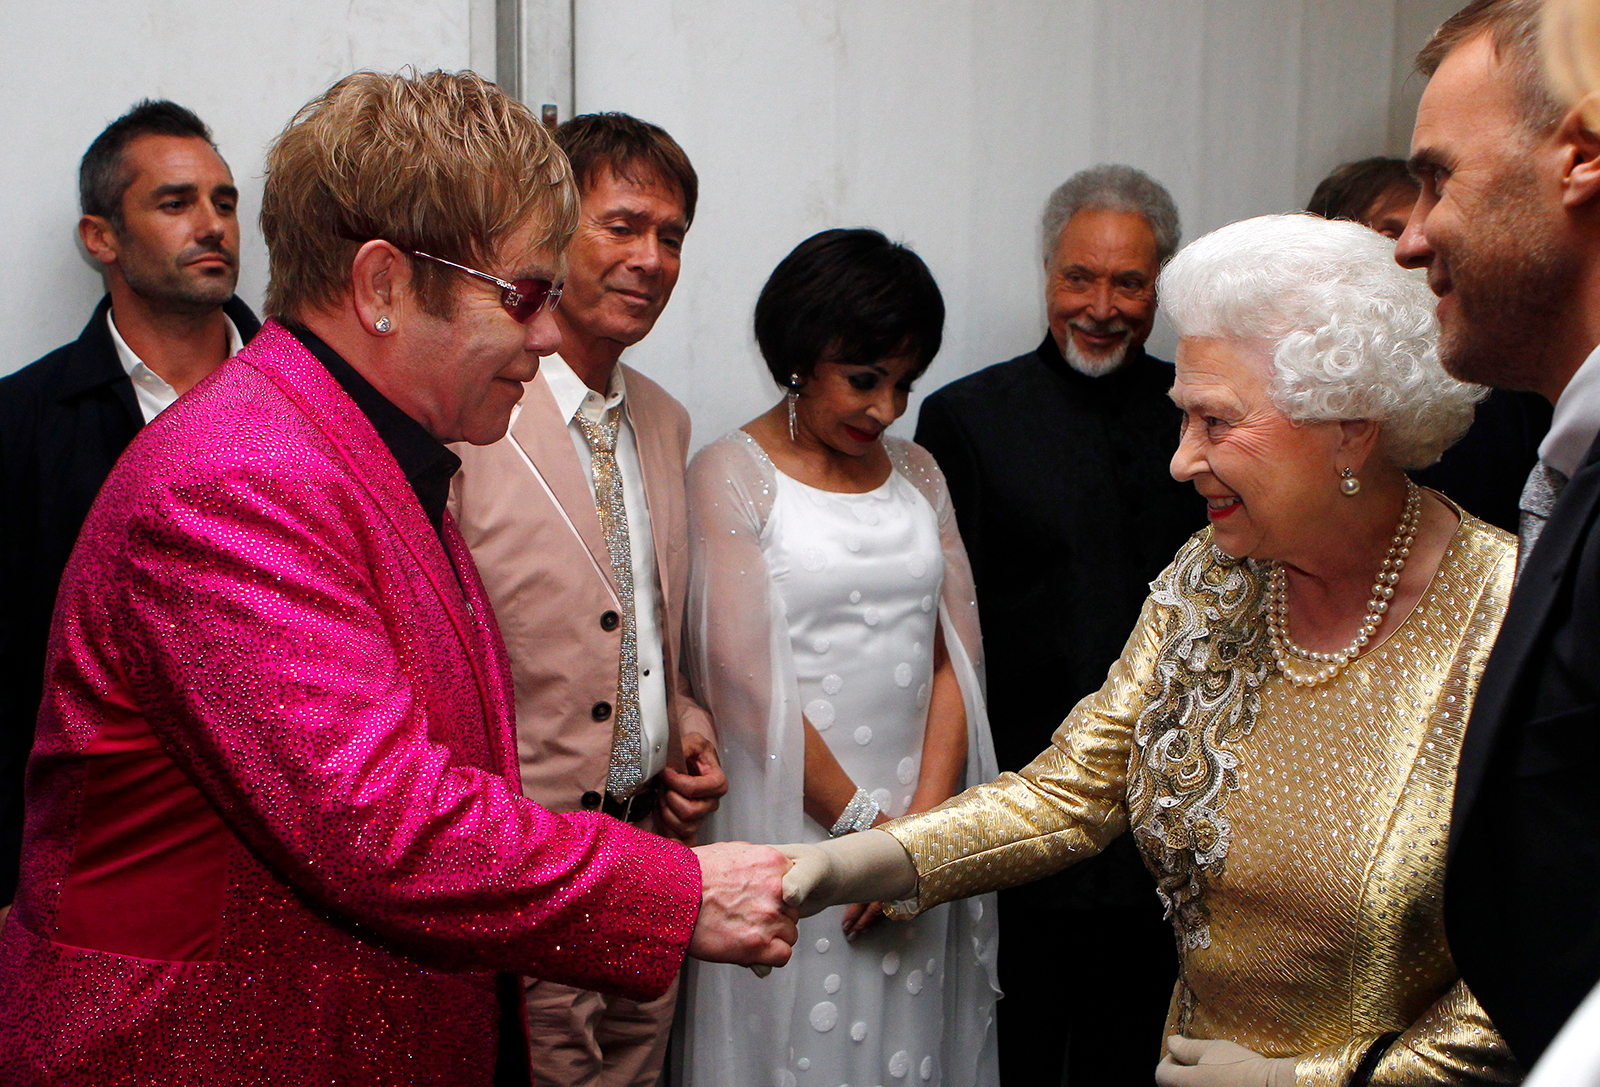 Queen Elizabeth meets with singer Elton John in London on June 4, 2012.